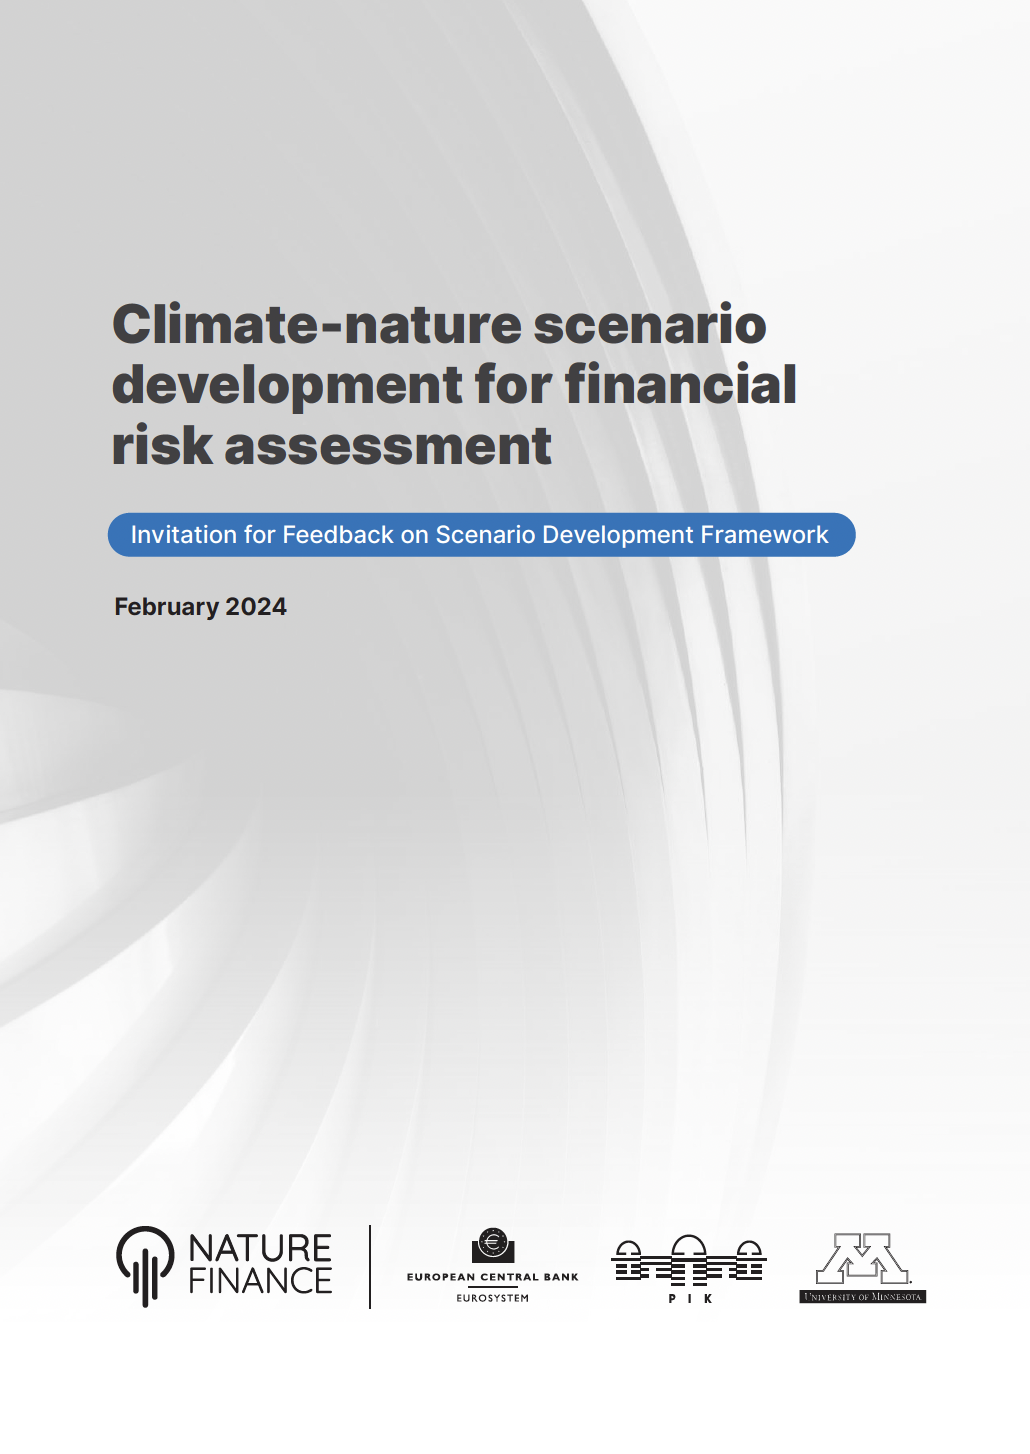 Разработка климато-природных сценариев для оценки финансовых рисков: Приглашение к отзывам о системе разработки сценариев  